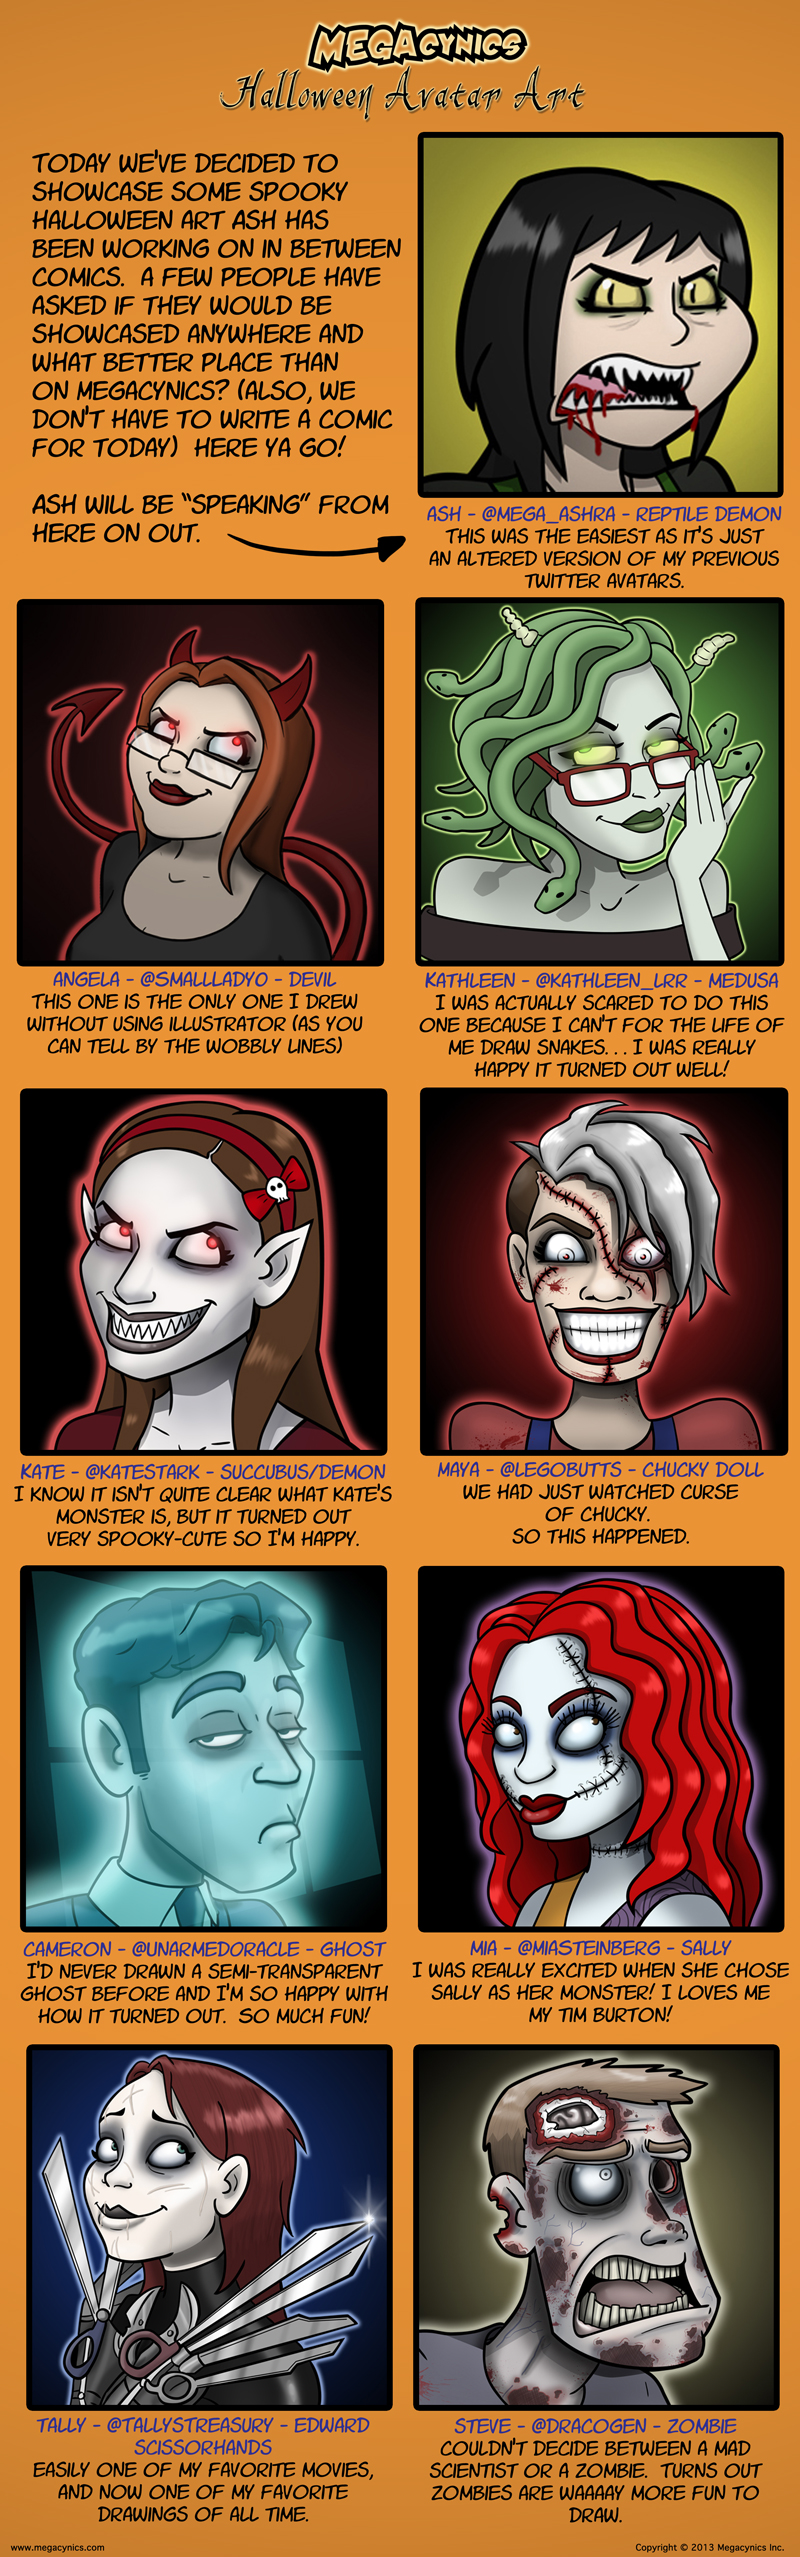 MegaCynics: Halloween Avatar Art (Oct 30, 2013)